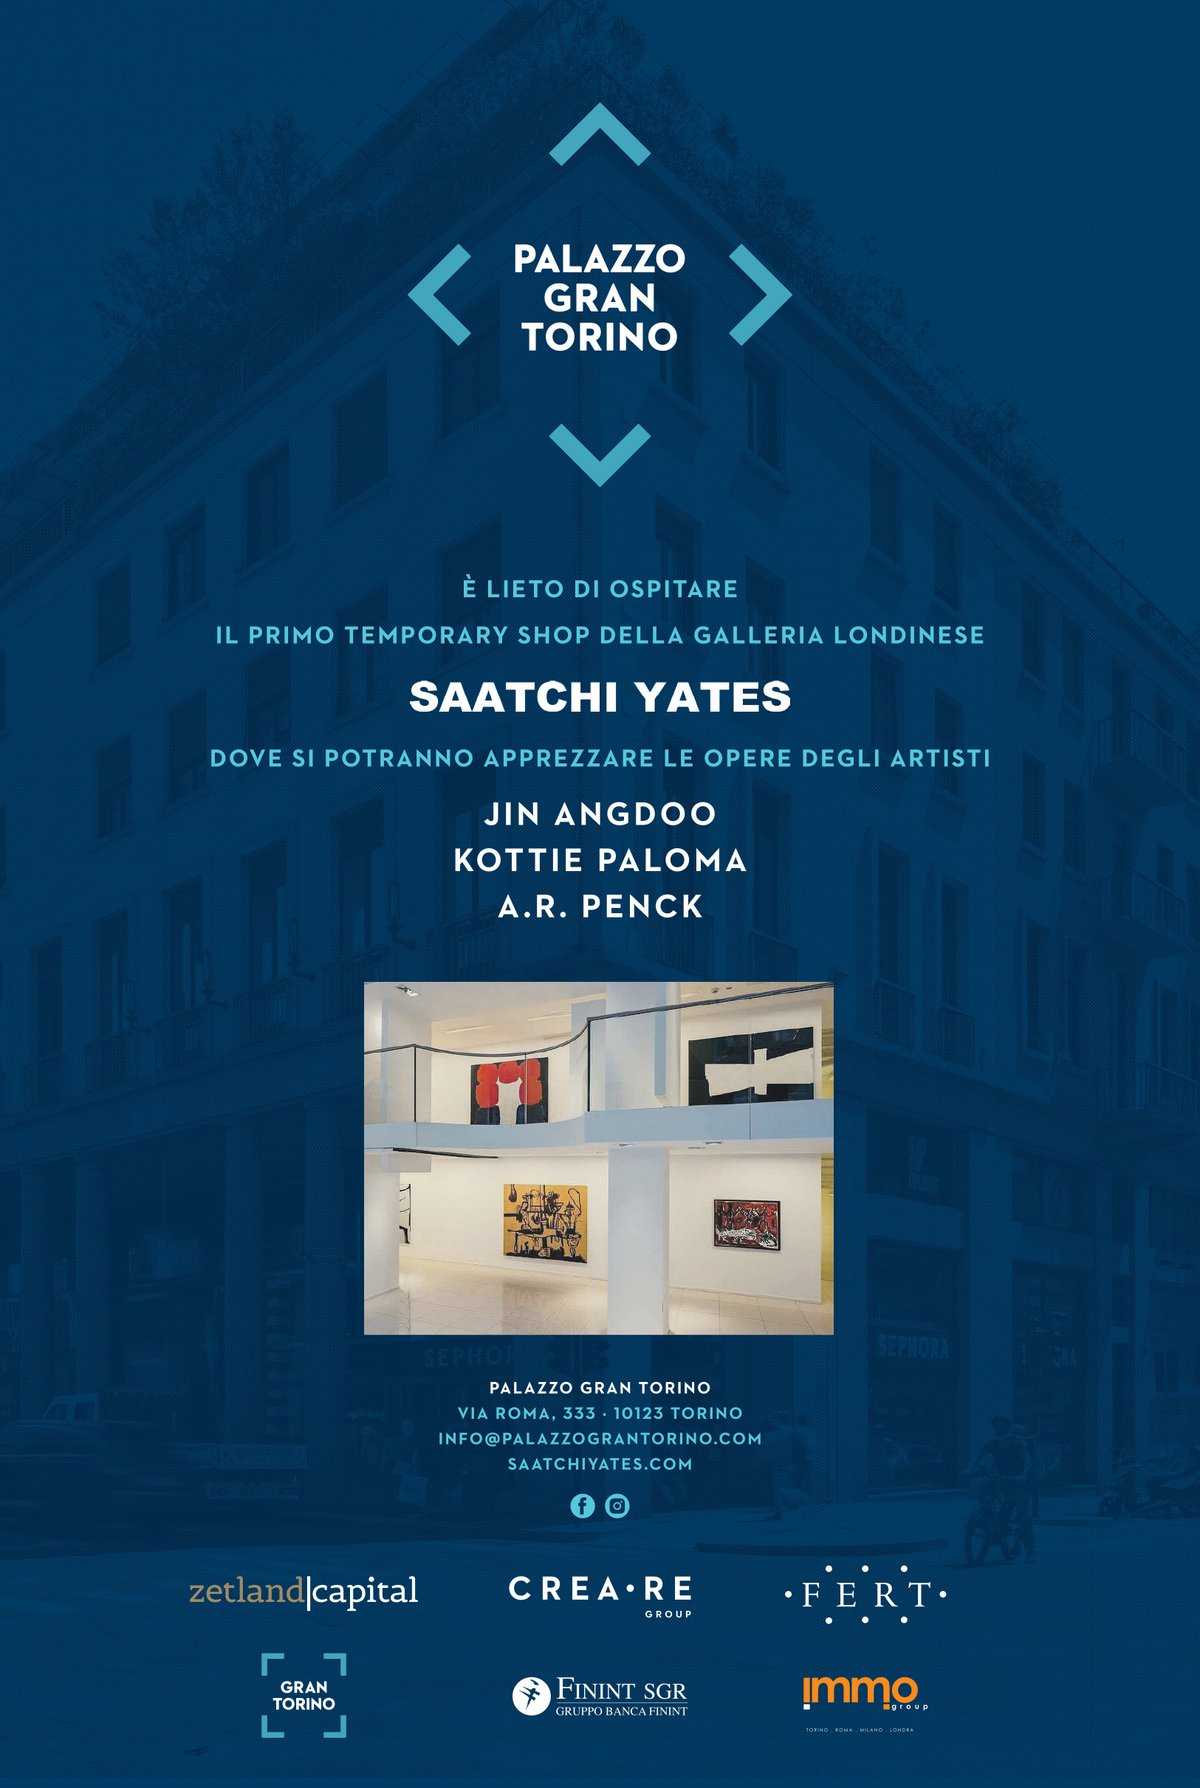 Palazzo Gran Torino | Saatchi Yates 